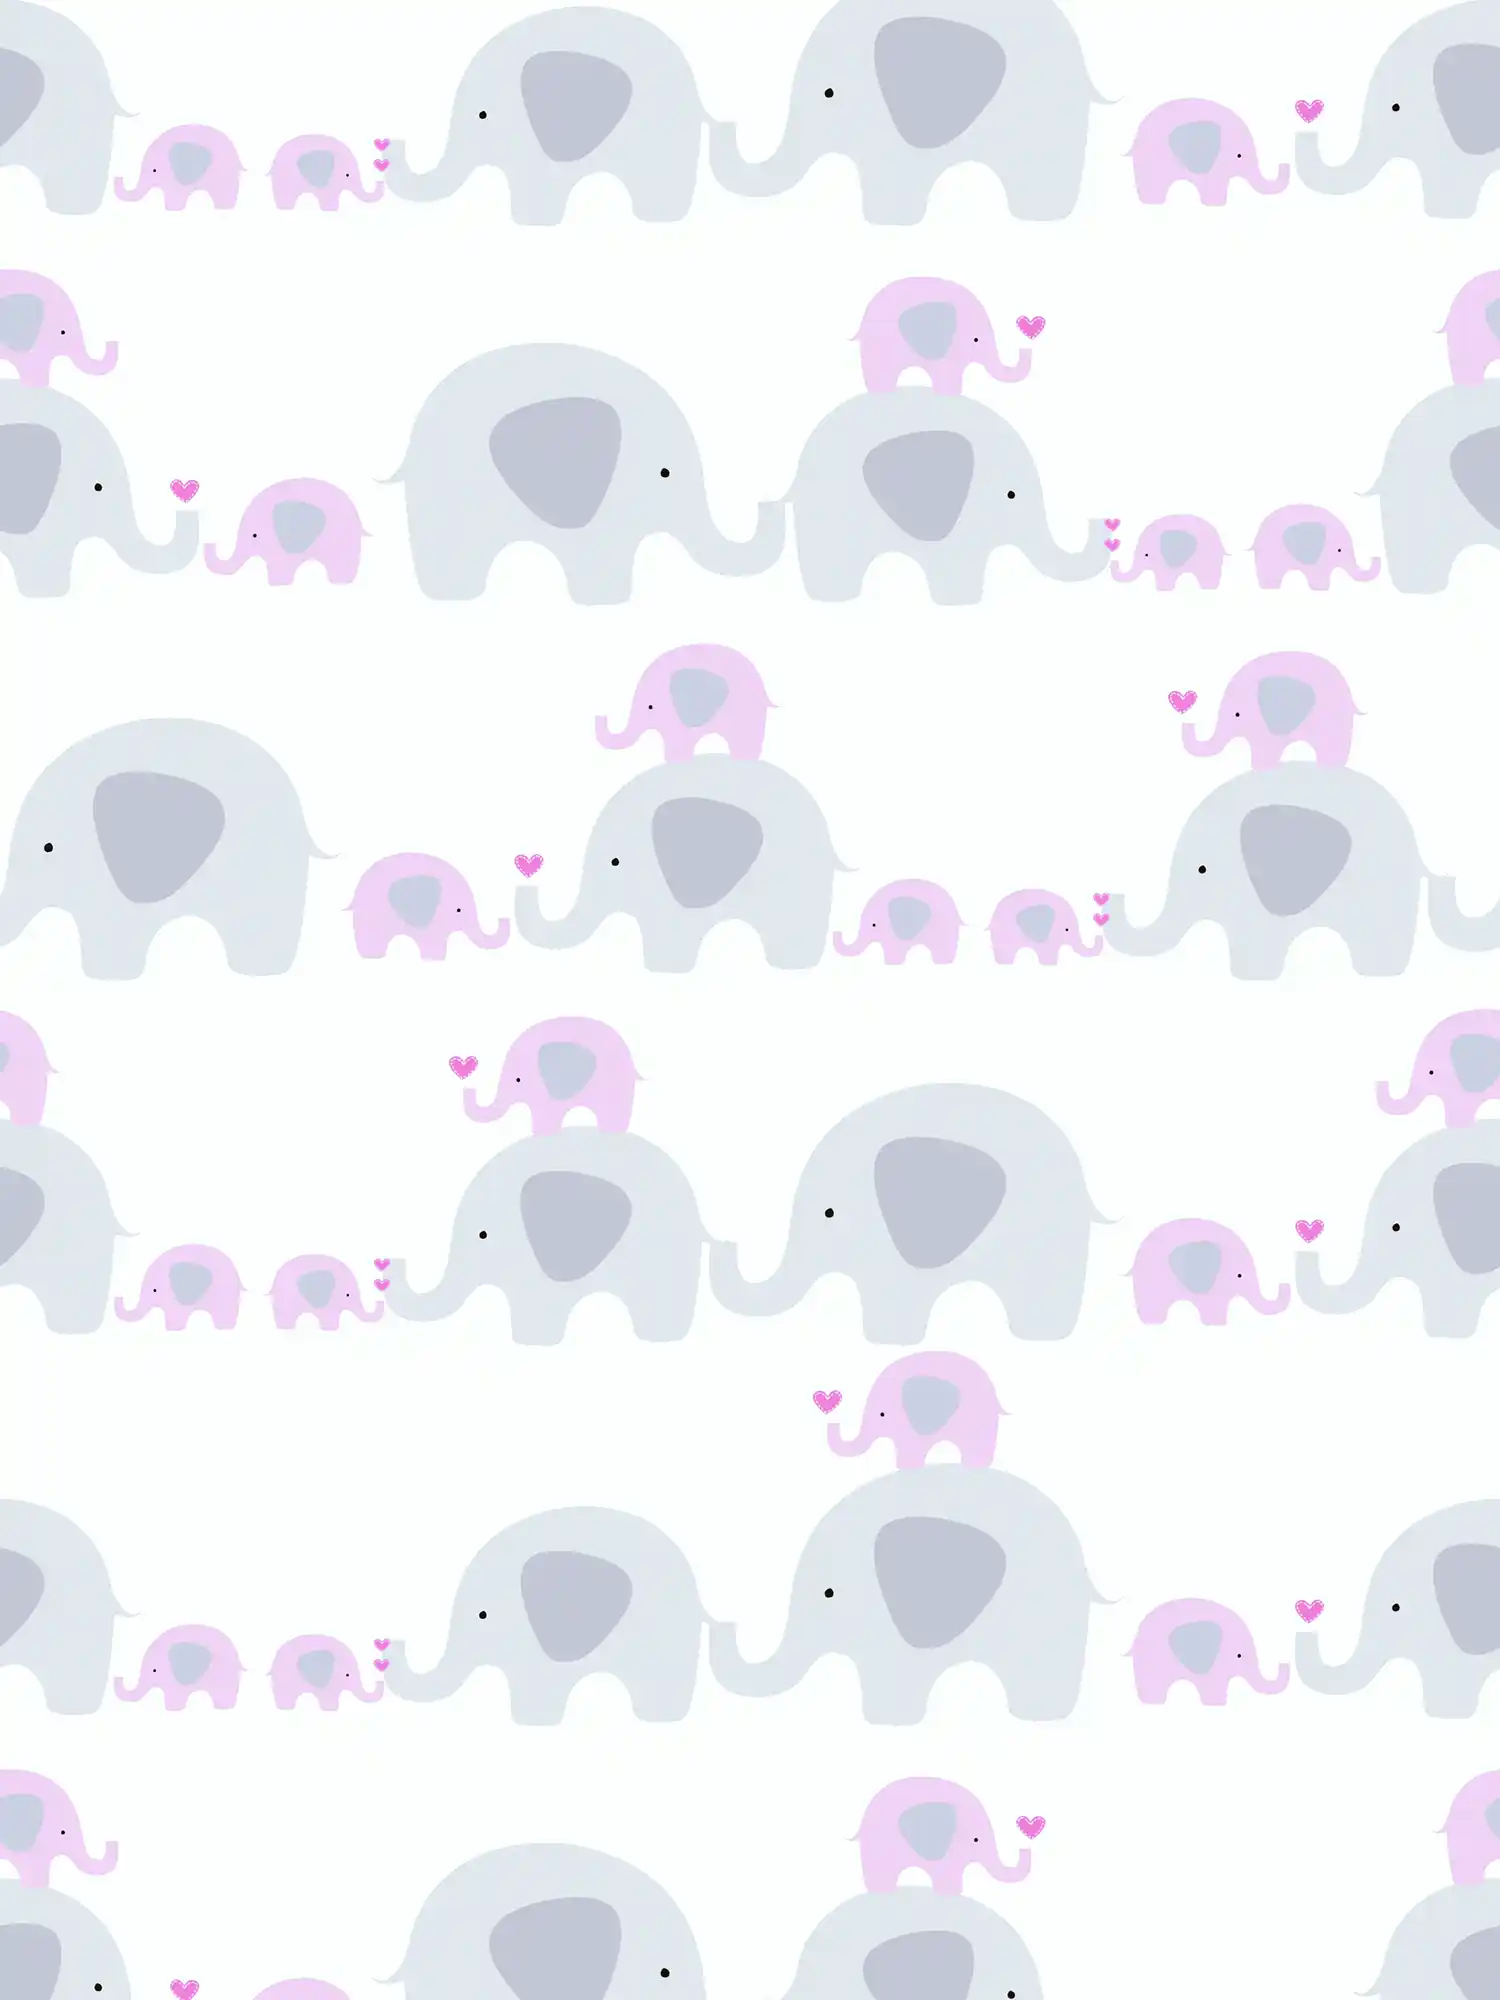 Tapete Mädchenzimmer Elefanten Muster – Rosa, Grau , Weiß
